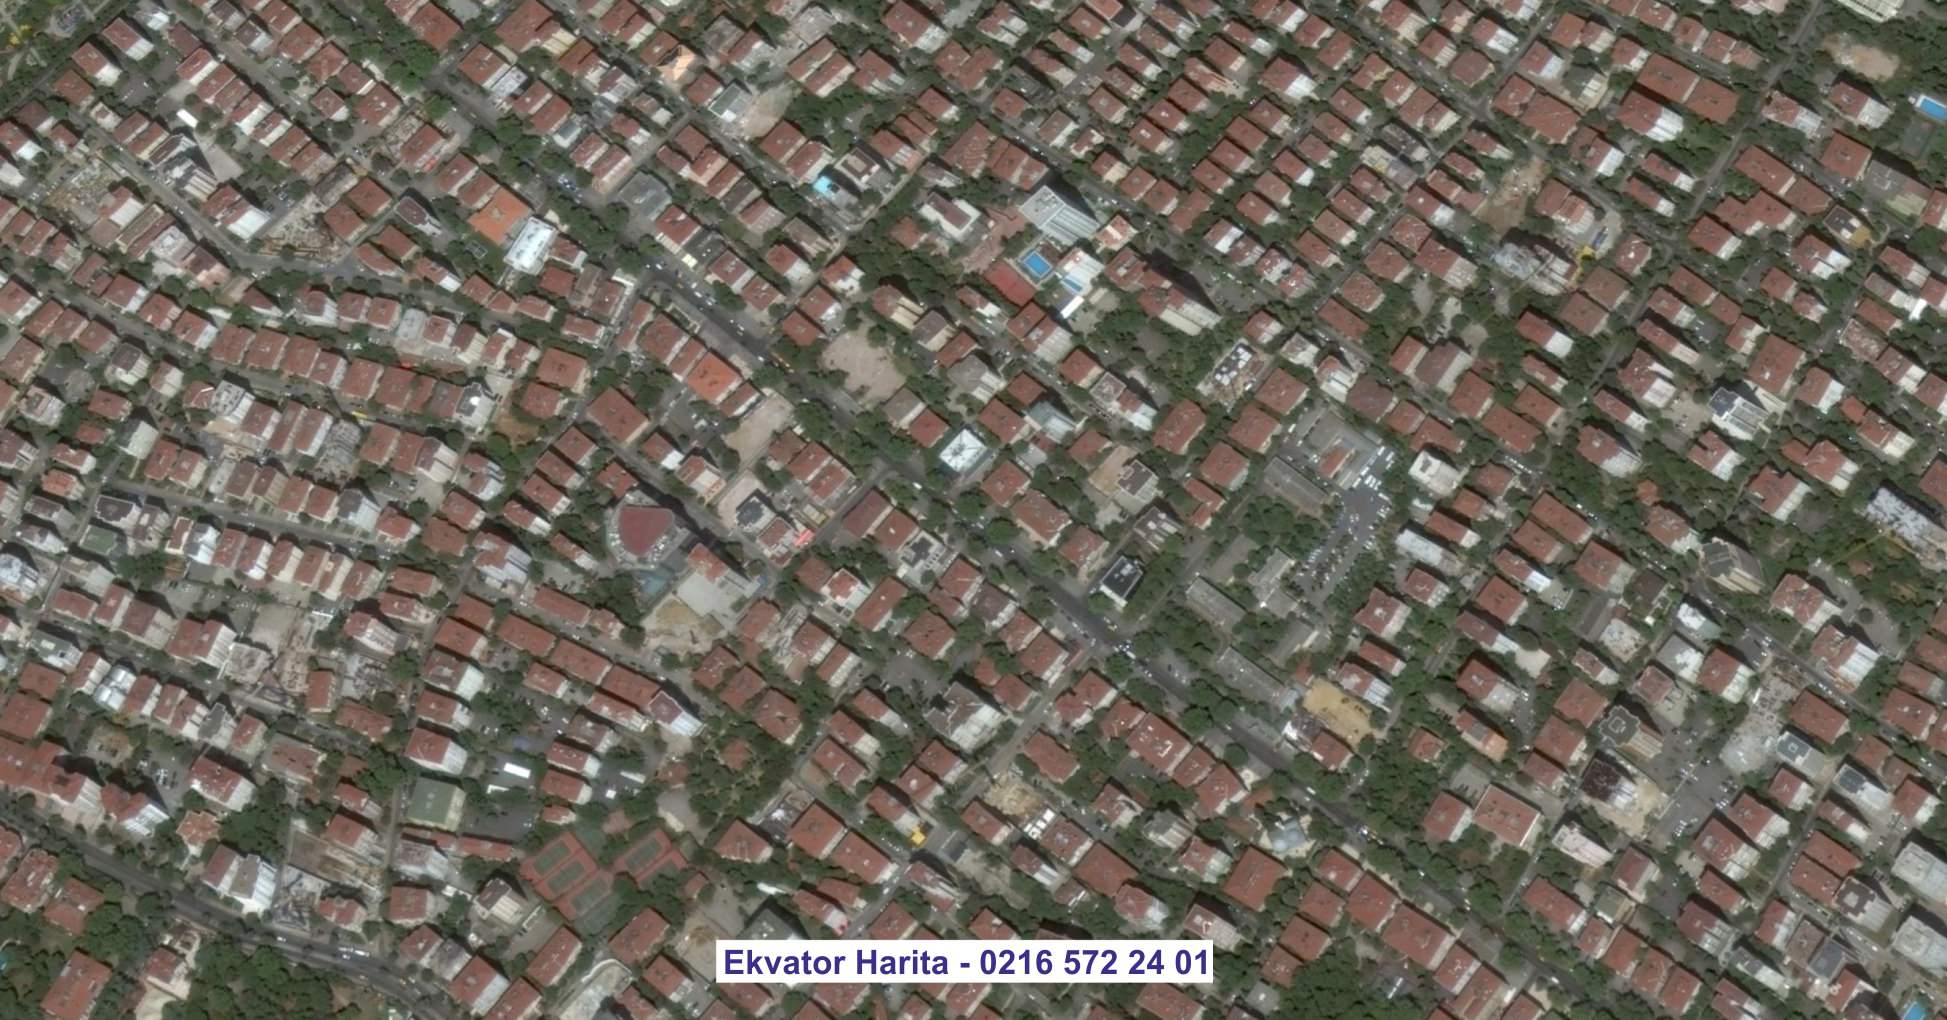 Dikmen Uydu Görüntüsü Örnek Fotoğrafı